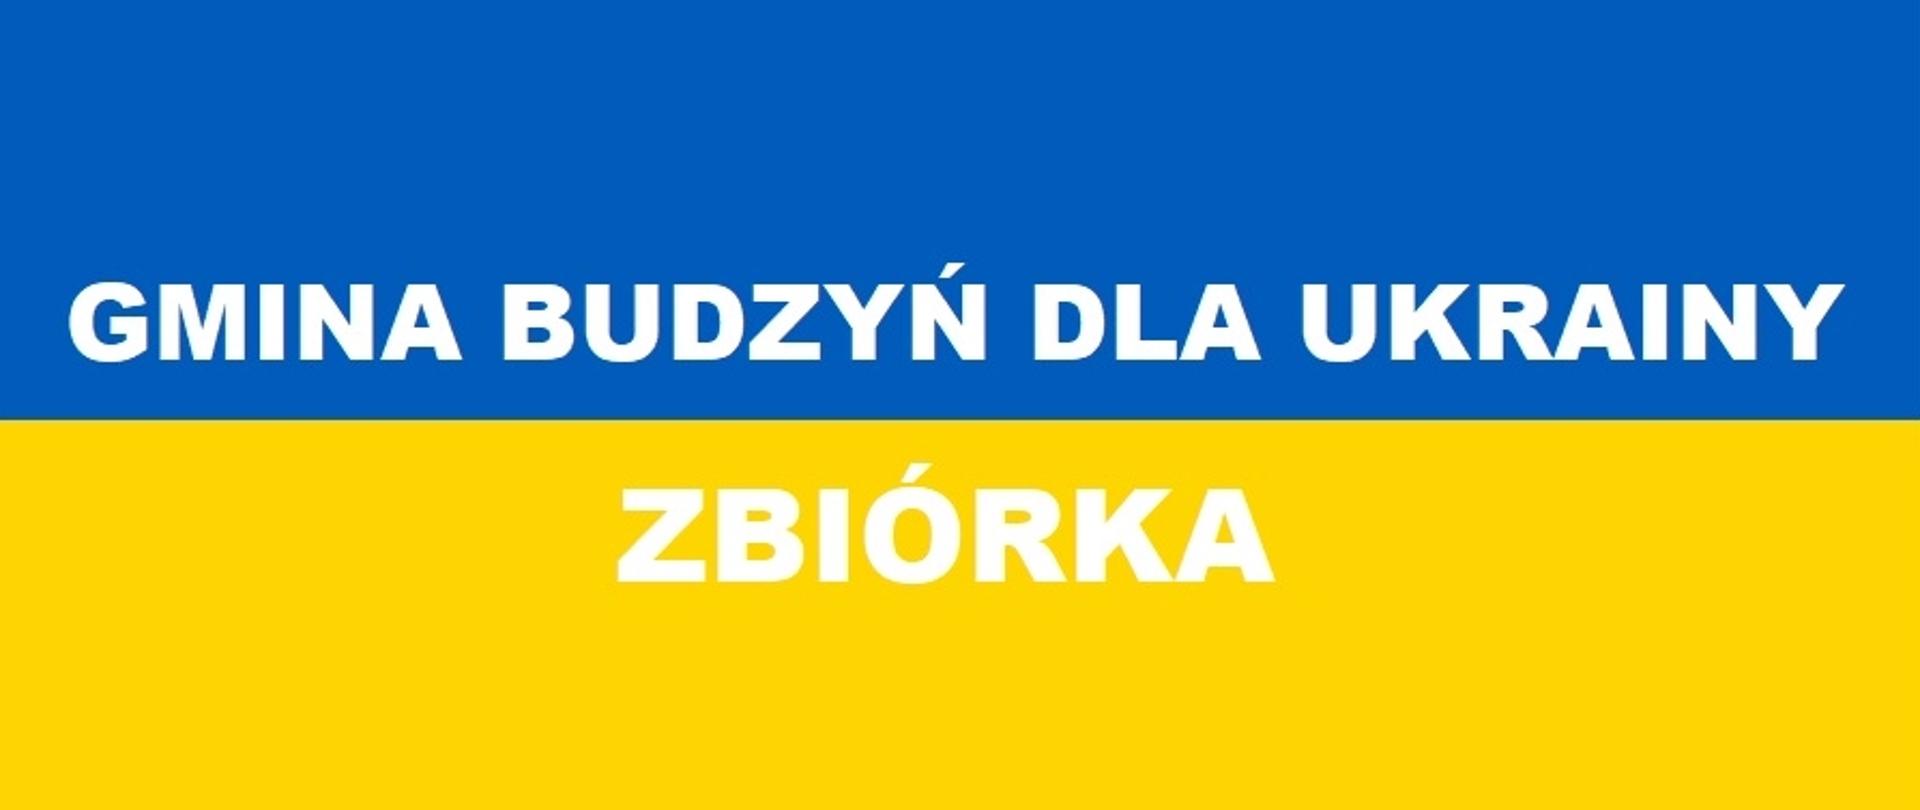 Gmina Budzyń dla Ukrainy - zbiórka